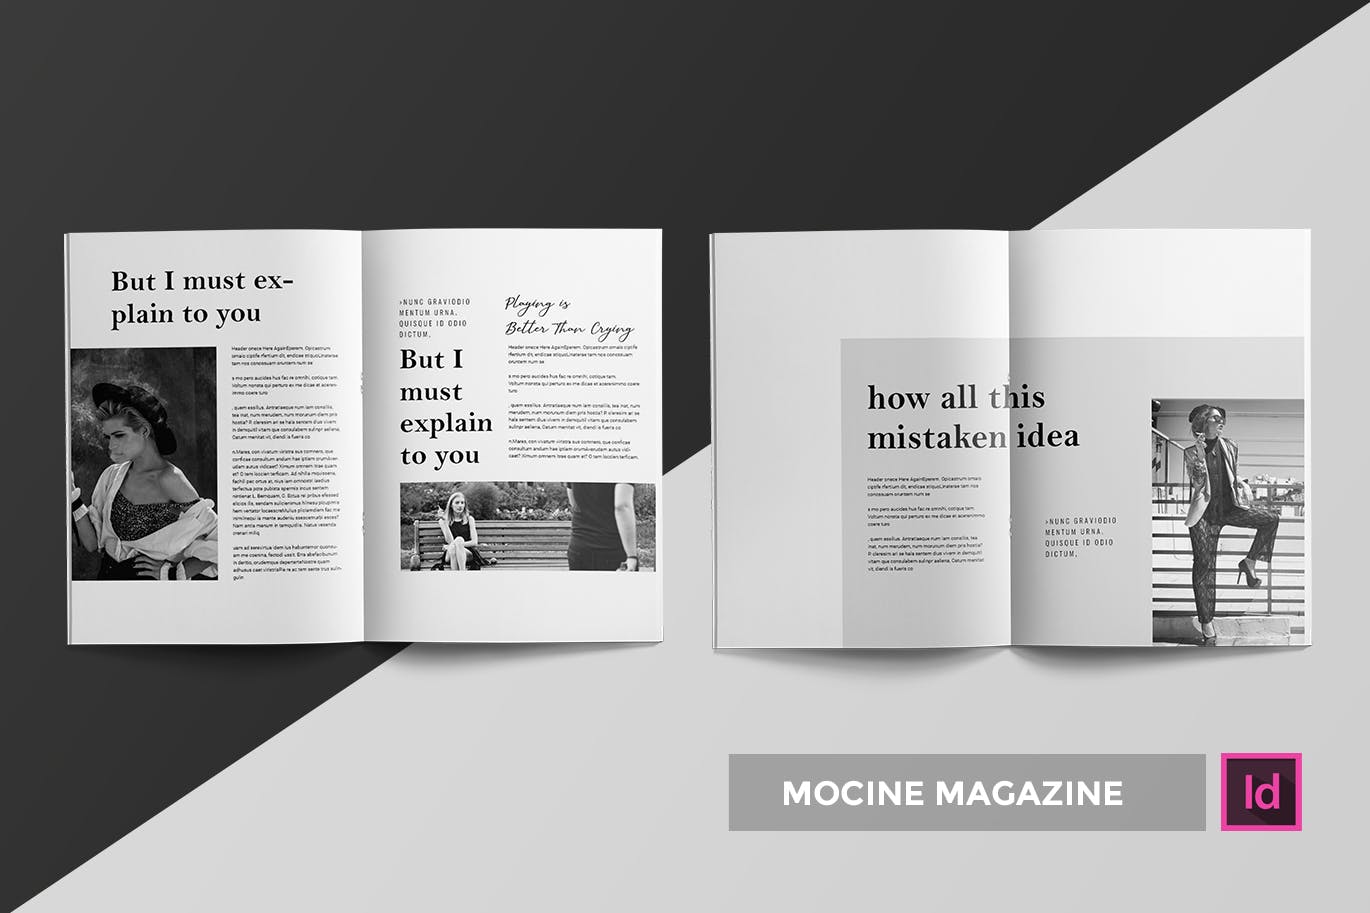 高端人物/摄影/时尚主题素材库精选杂志版式排版设计INDD模板 Mocine | Magazine Template插图(1)